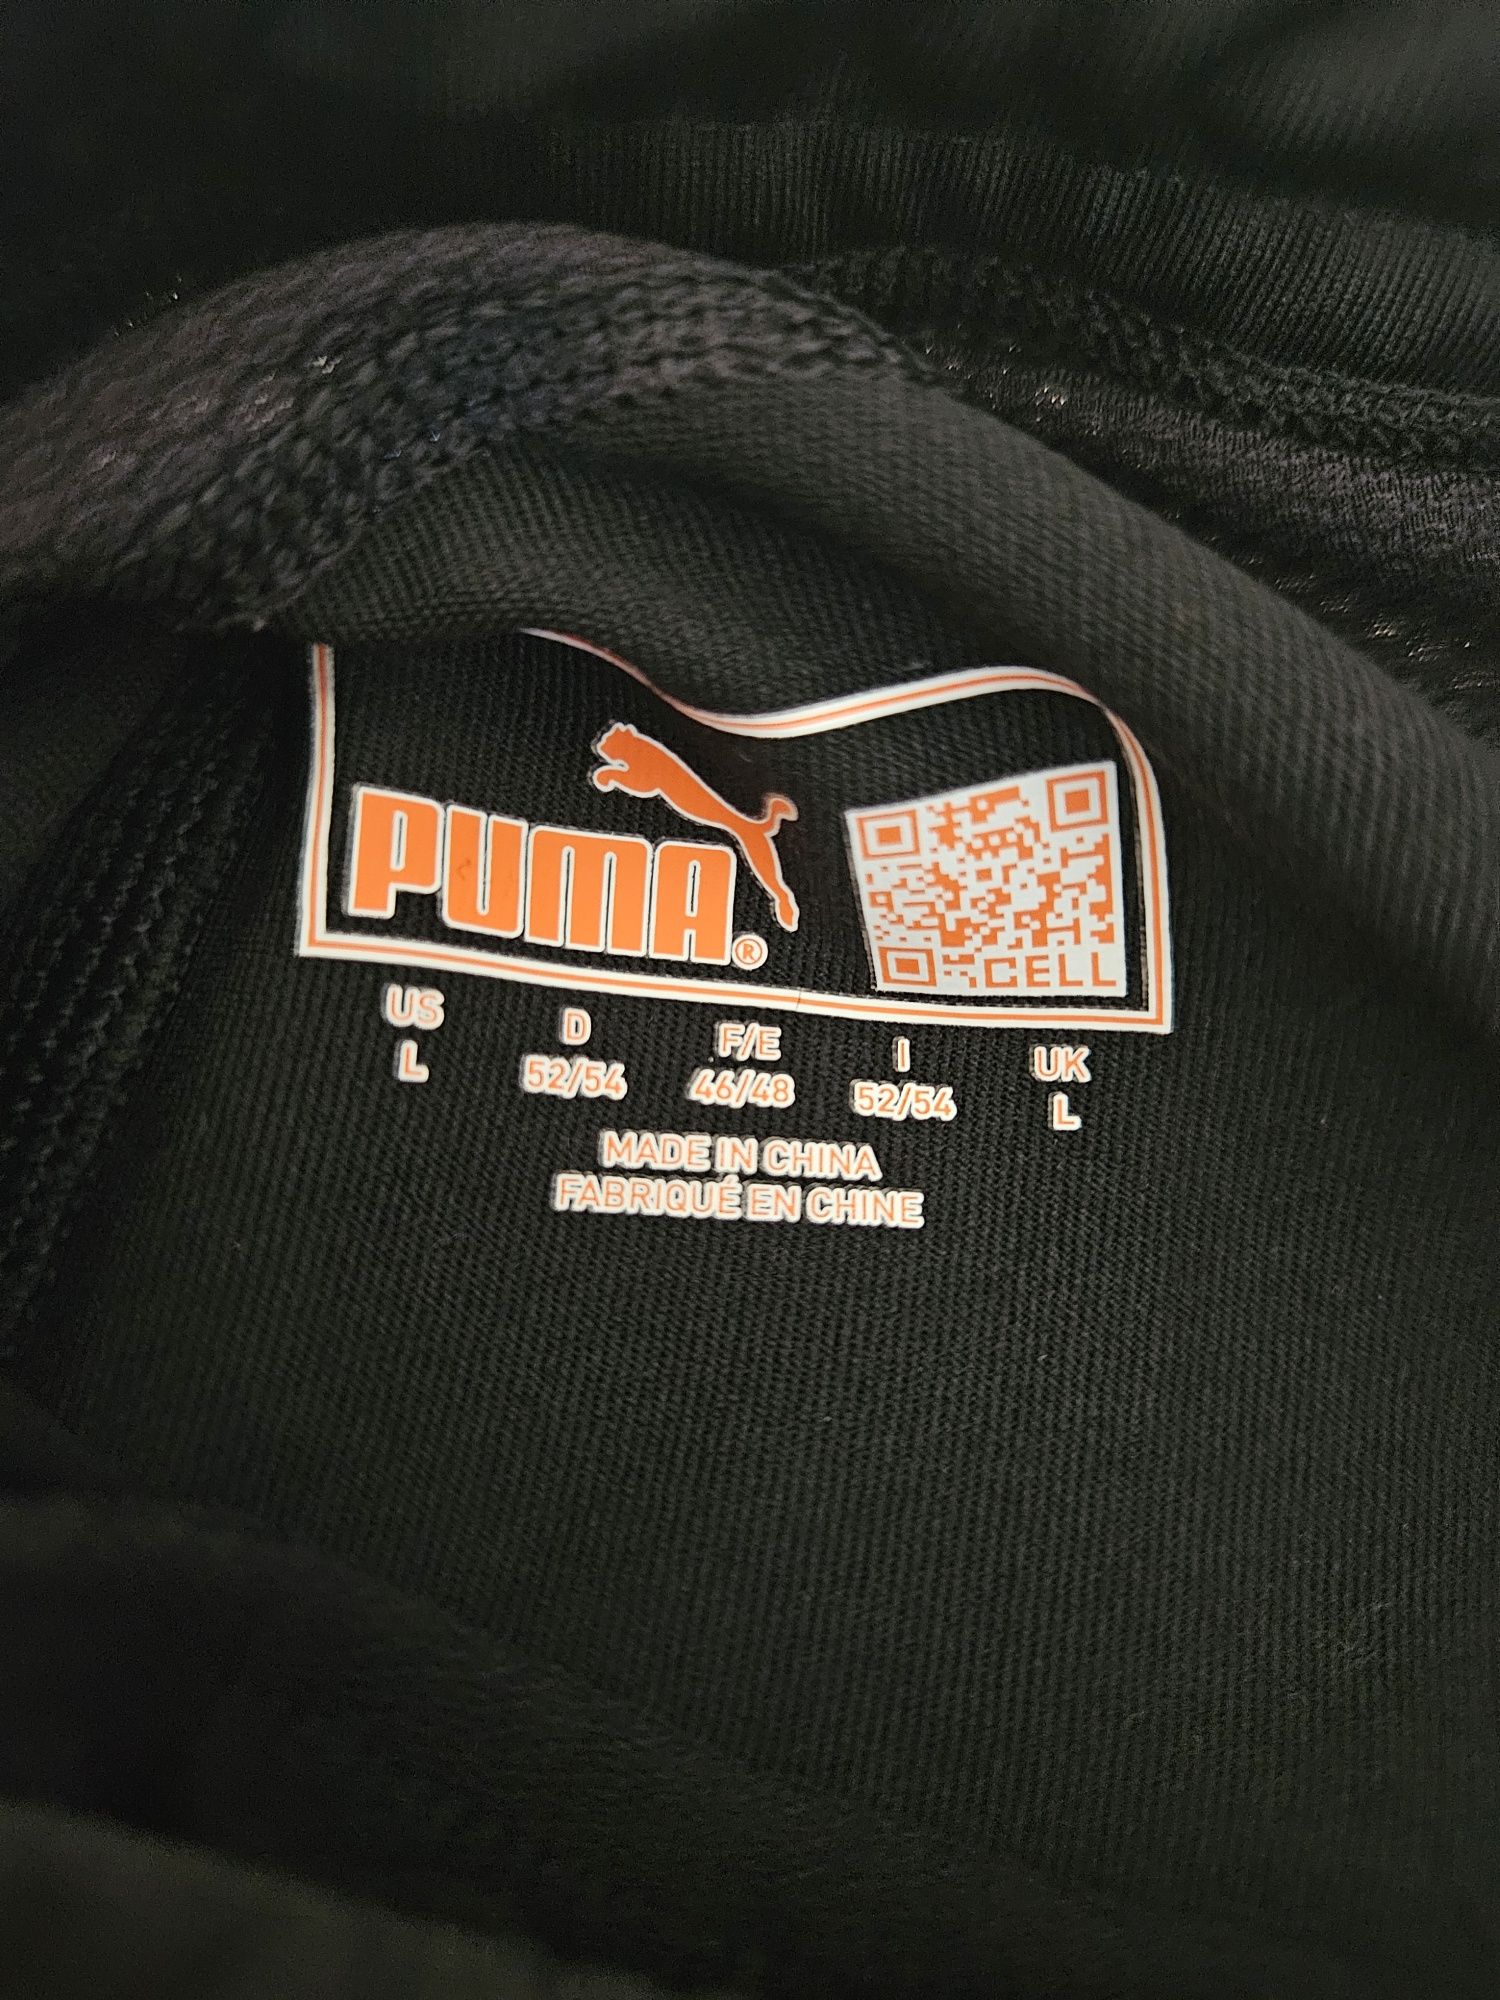 Spodnie sportowe, leginsy firmy Puma rozm. M